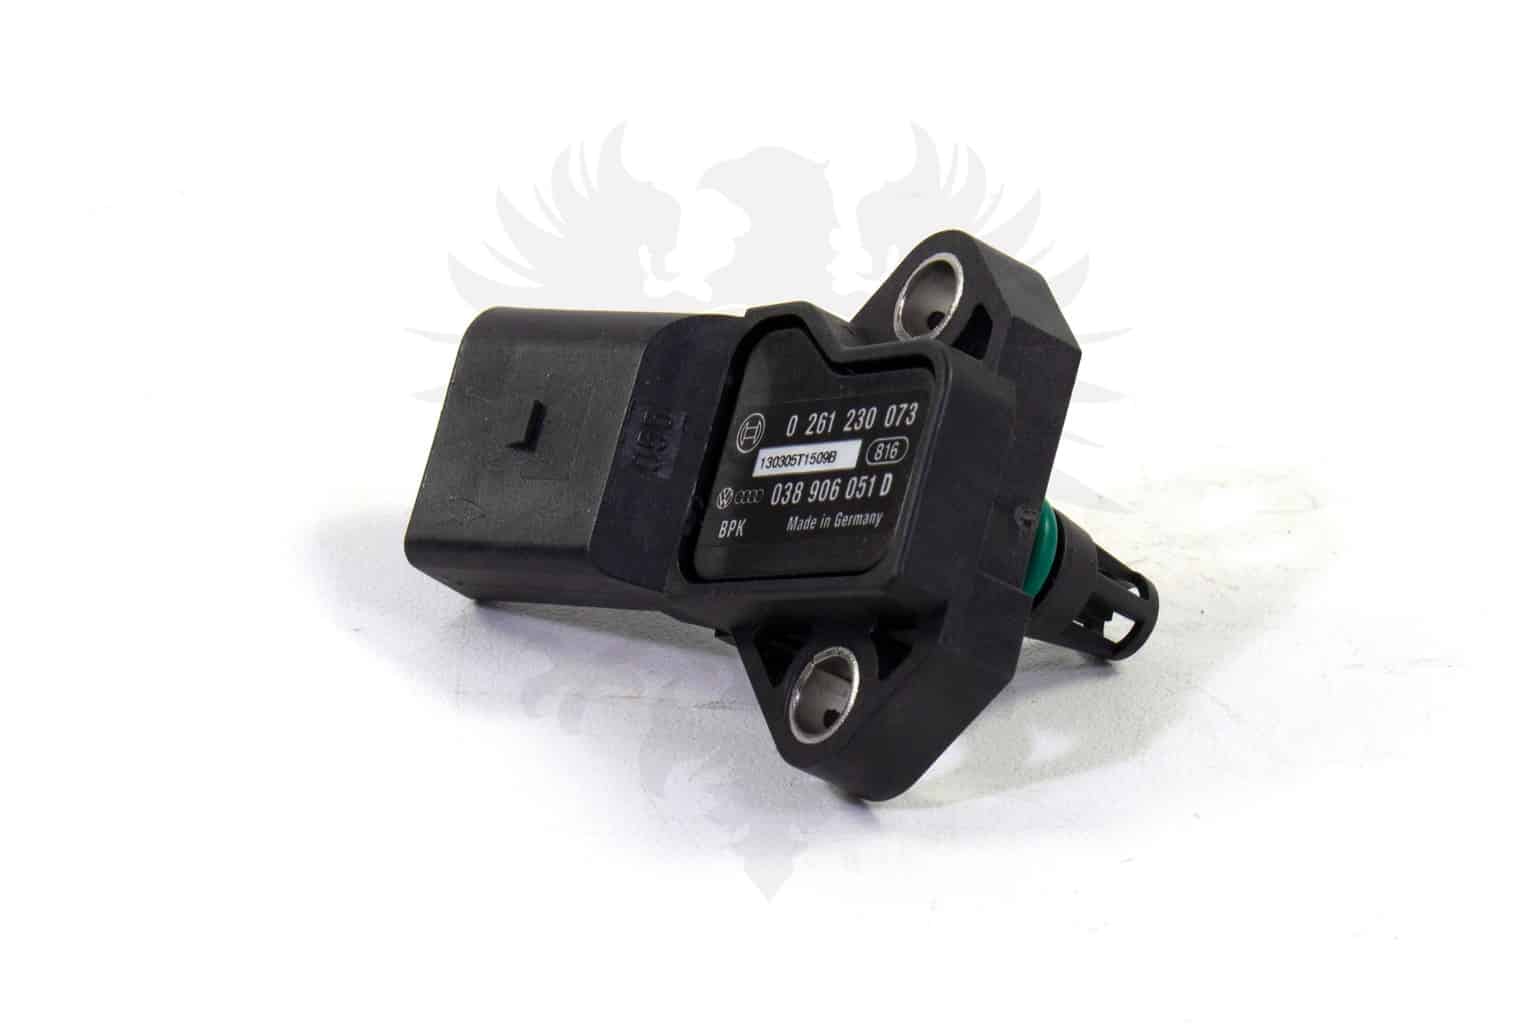 Manifold Absolute Turbo MAP Sensor Boost Pressure Drucksensor Sender For AUDI  A3 A4 A6 Q3 S3 TT 1.8 2.0 TFSI FSI T 038 906 051 D